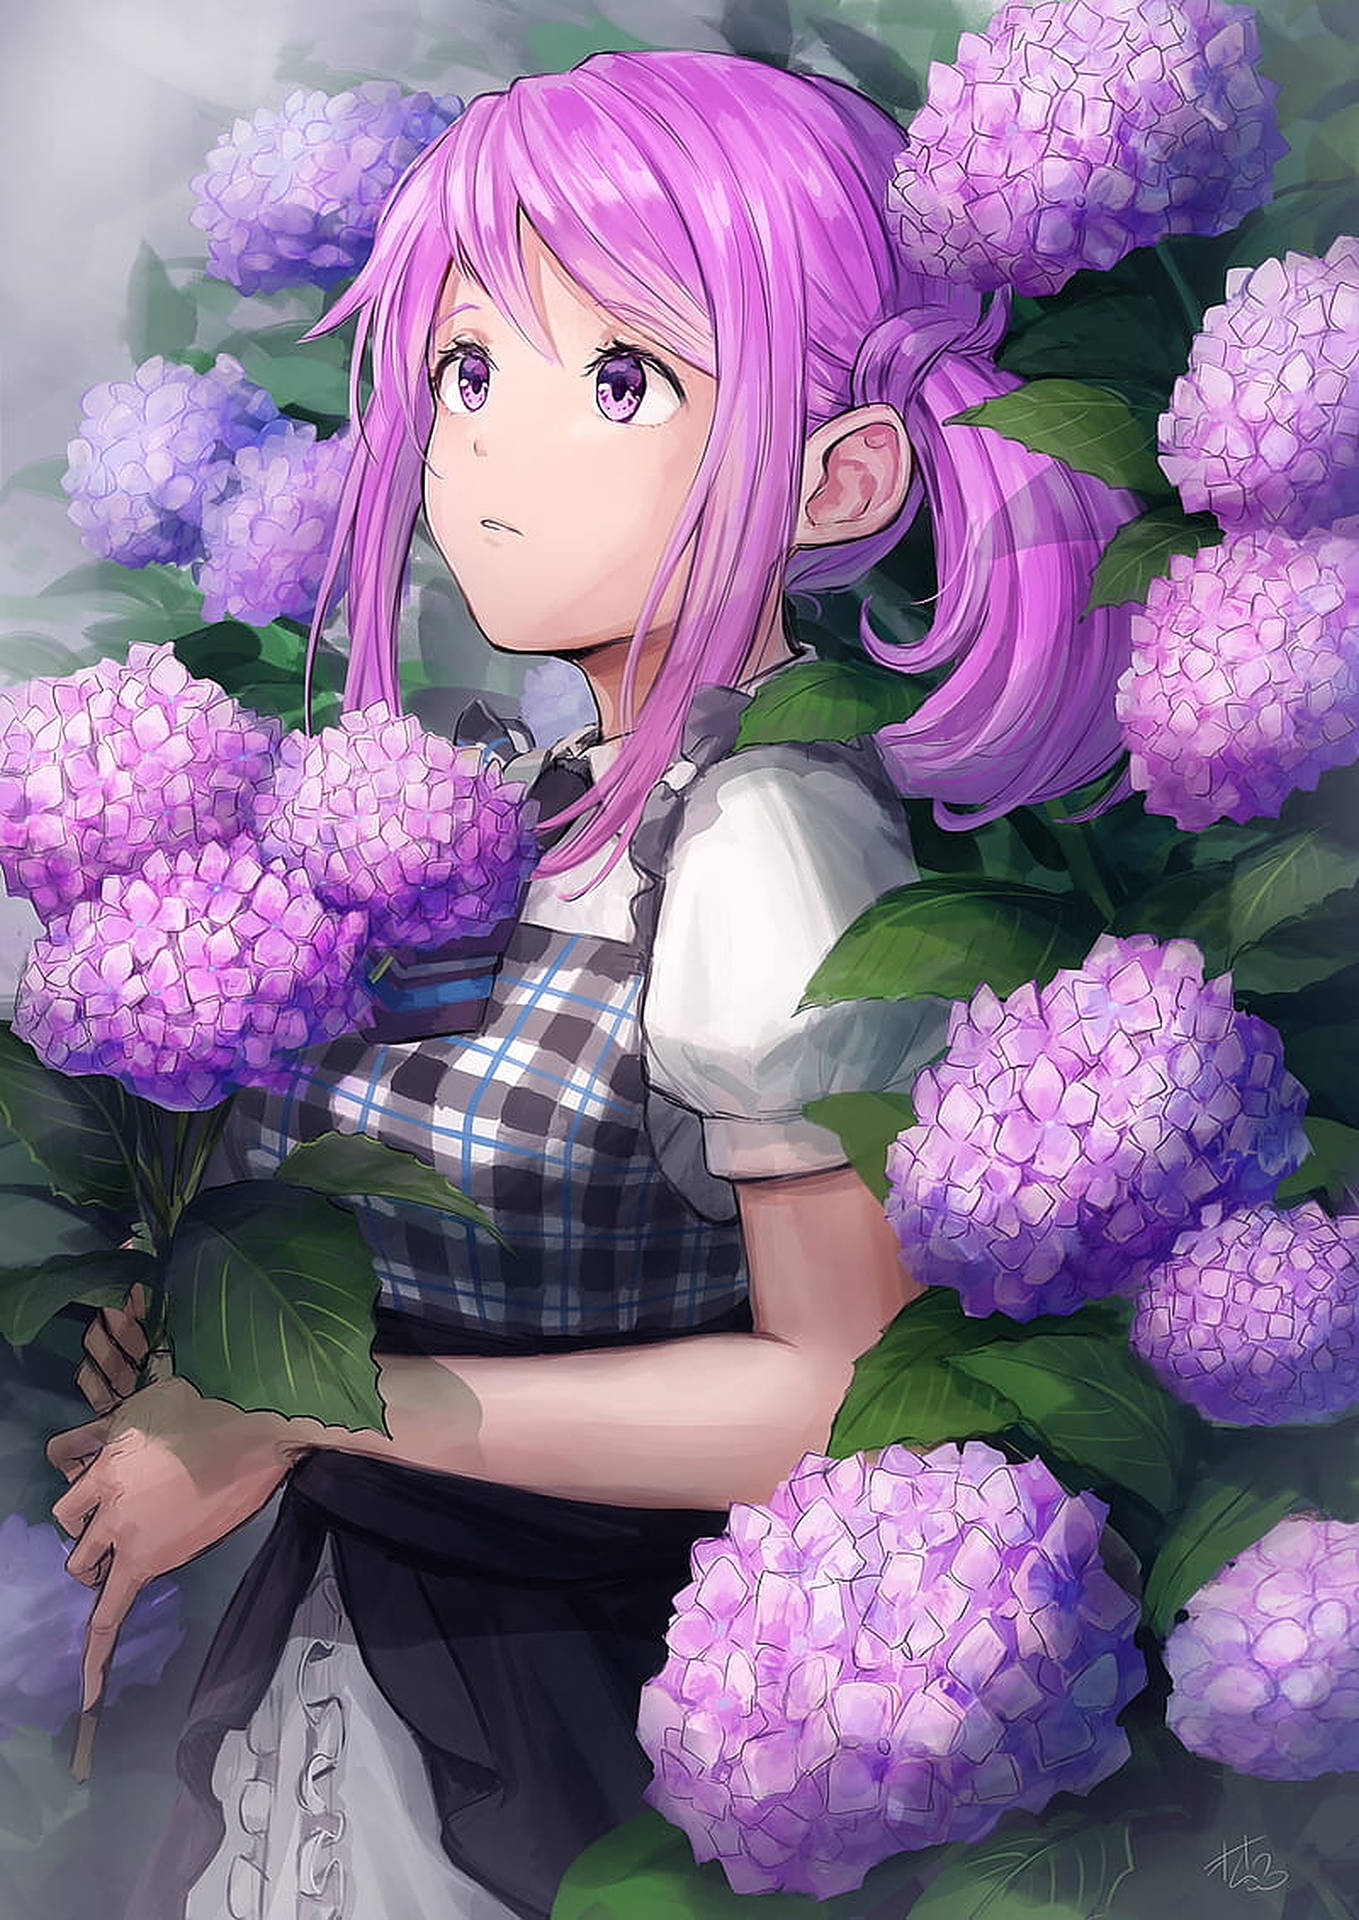 Cute Anime Girl Profile Picture